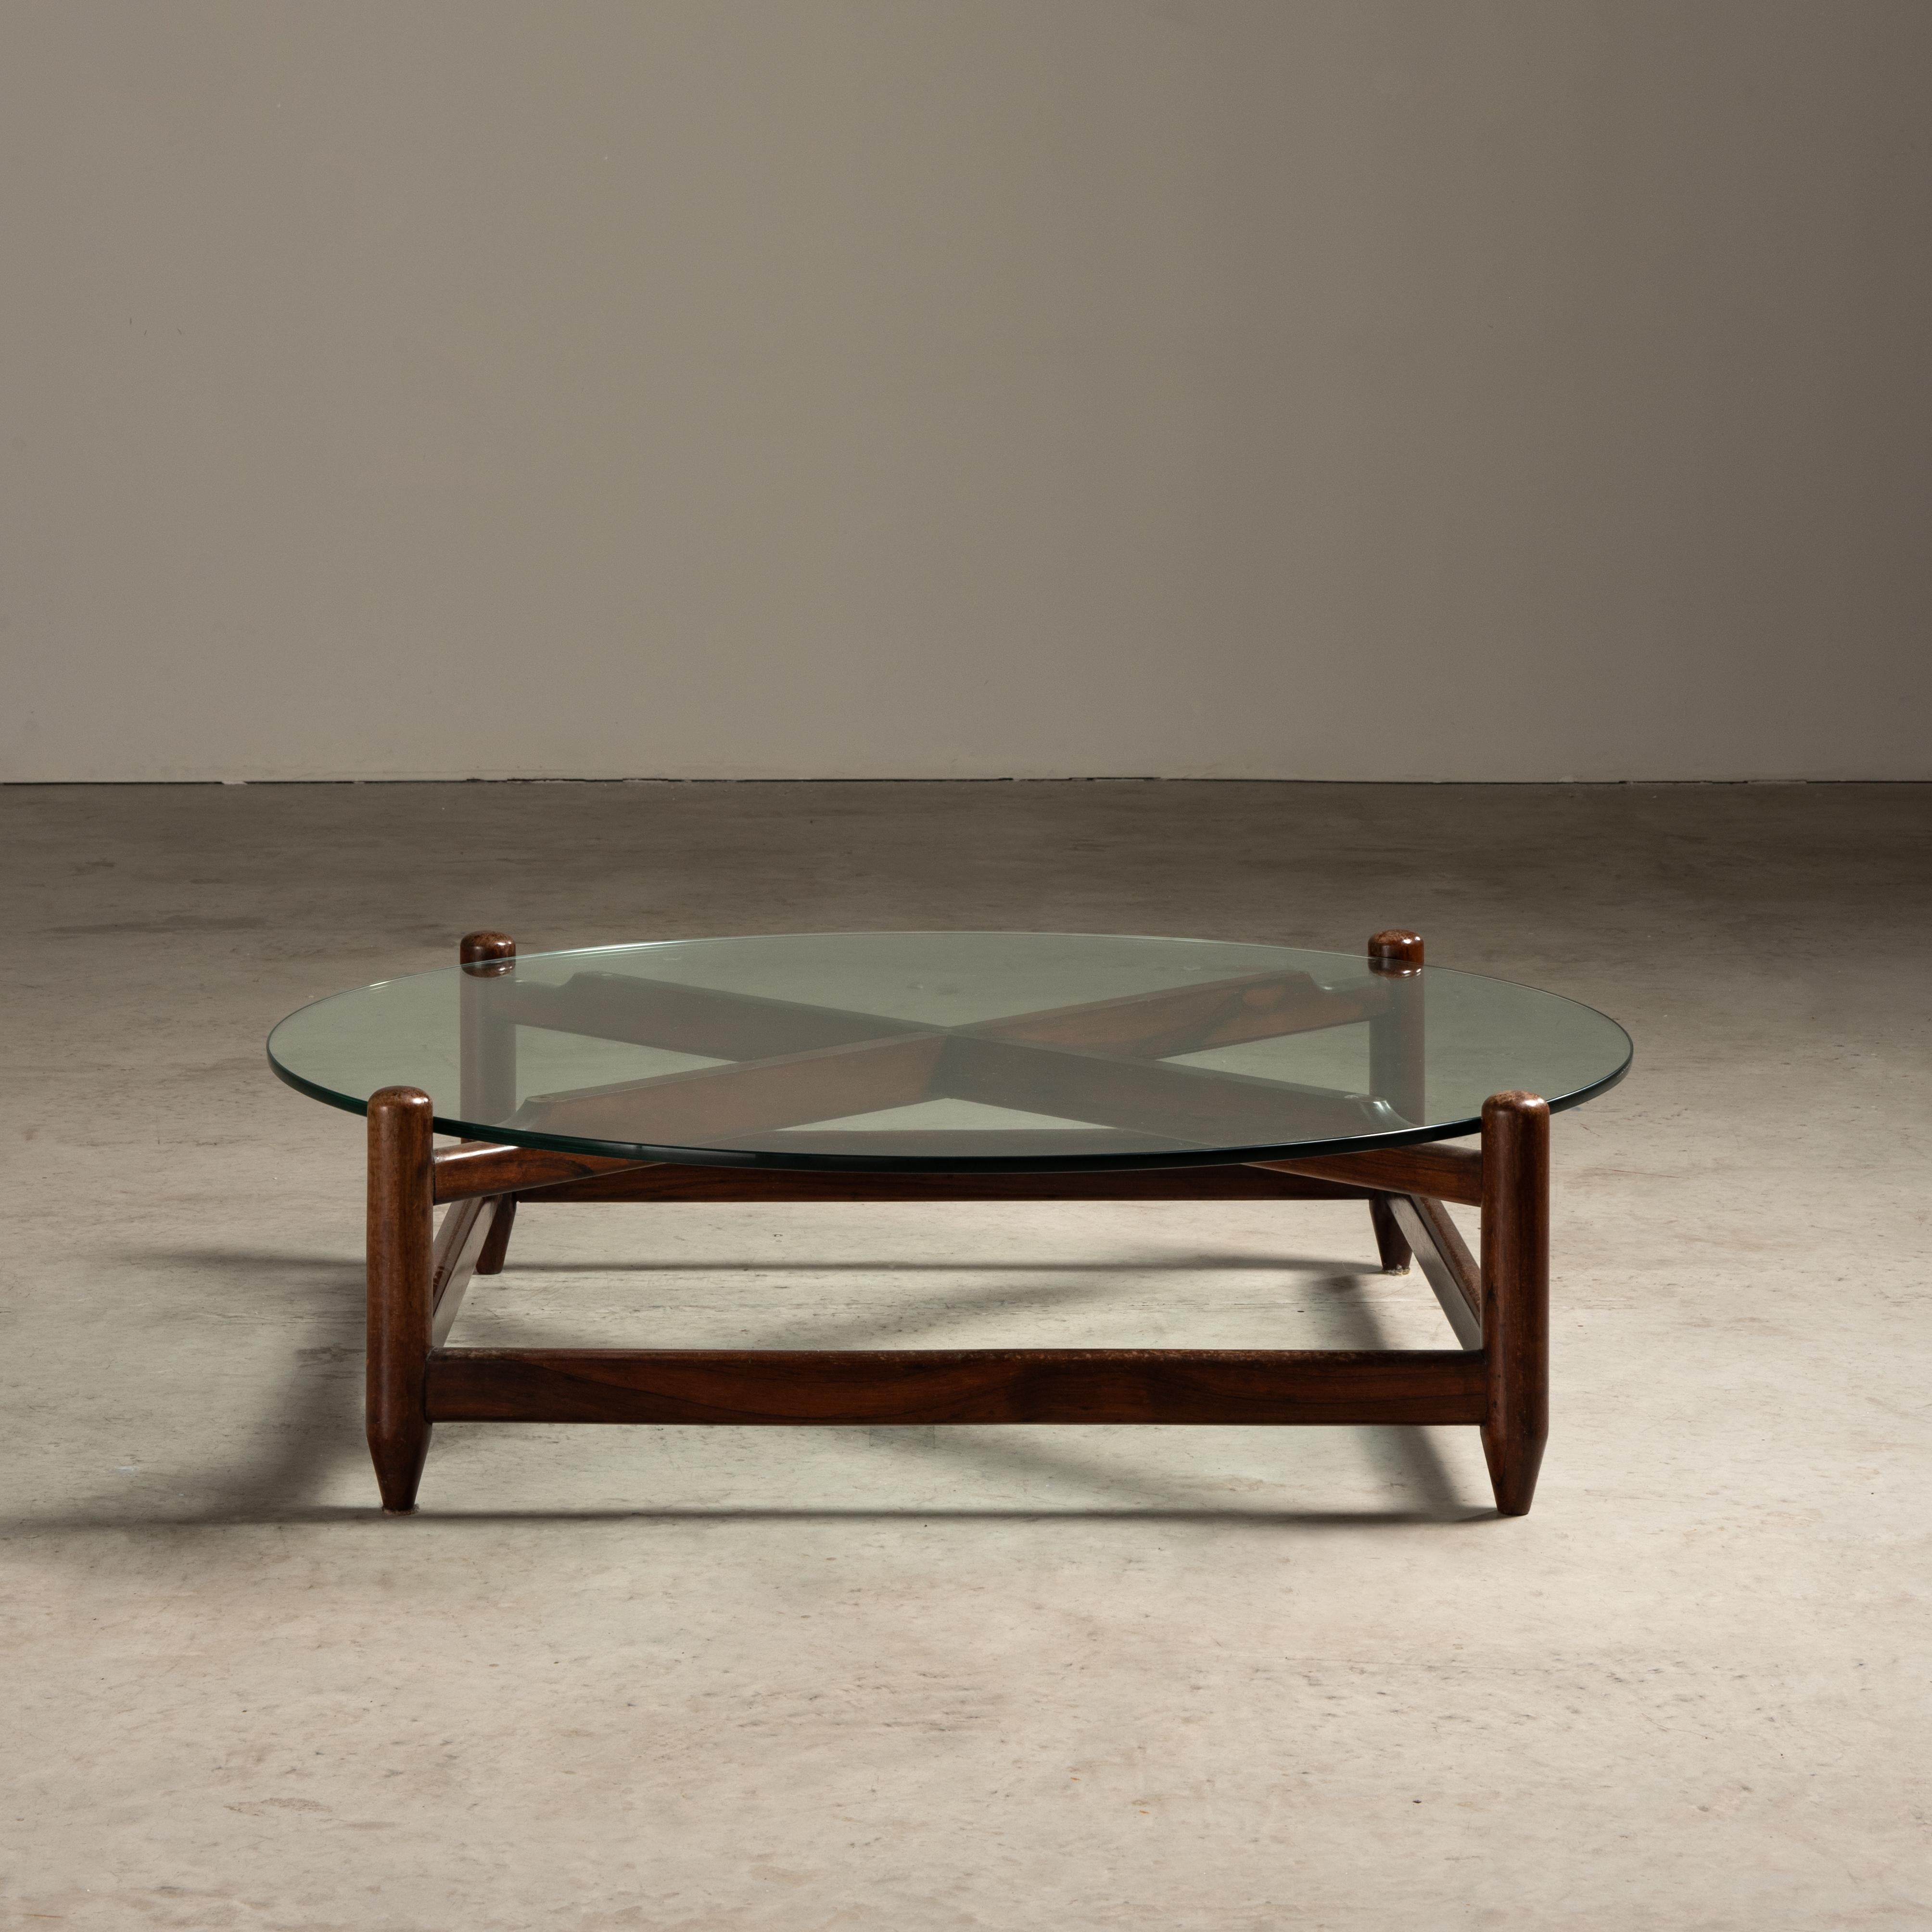 Dieser aus Holz und Glas gefertigte Mitteltisch von Móveis Cantu ist ein schönes Beispiel für brasilianisches Design aus der Mitte des Jahrhunderts. Der Tisch hat eine runde Glasplatte, die bequem auf einem Holzsockel ruht. Das Gestell ist aus